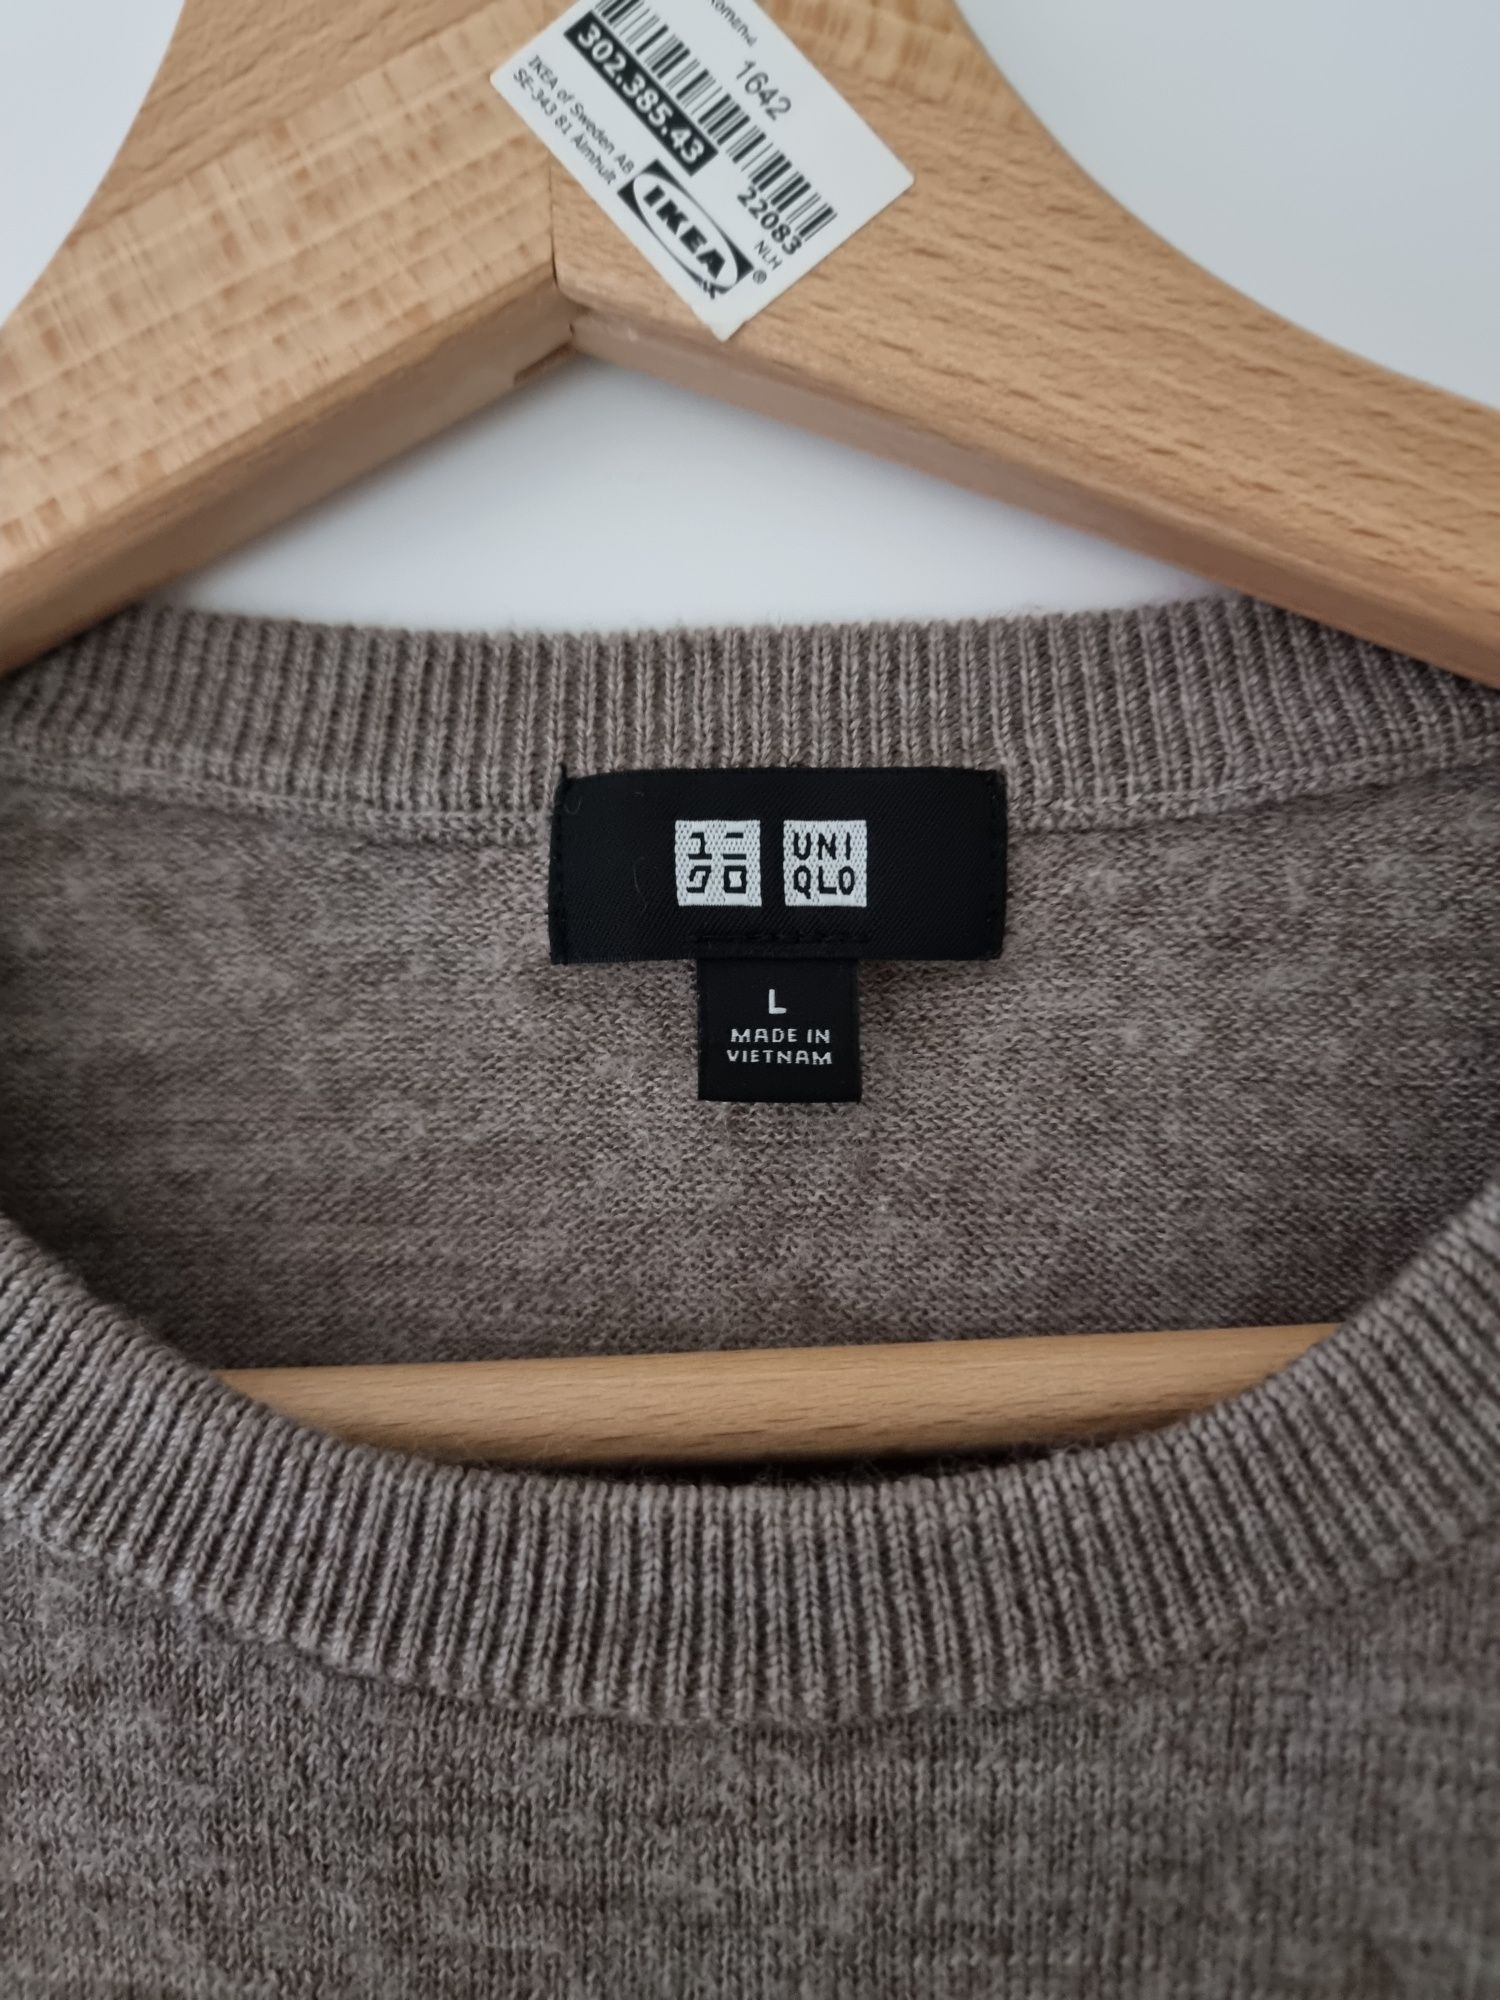 Szary beżowy sweter wełniany 100% wełna merino Uniqlo wool pure